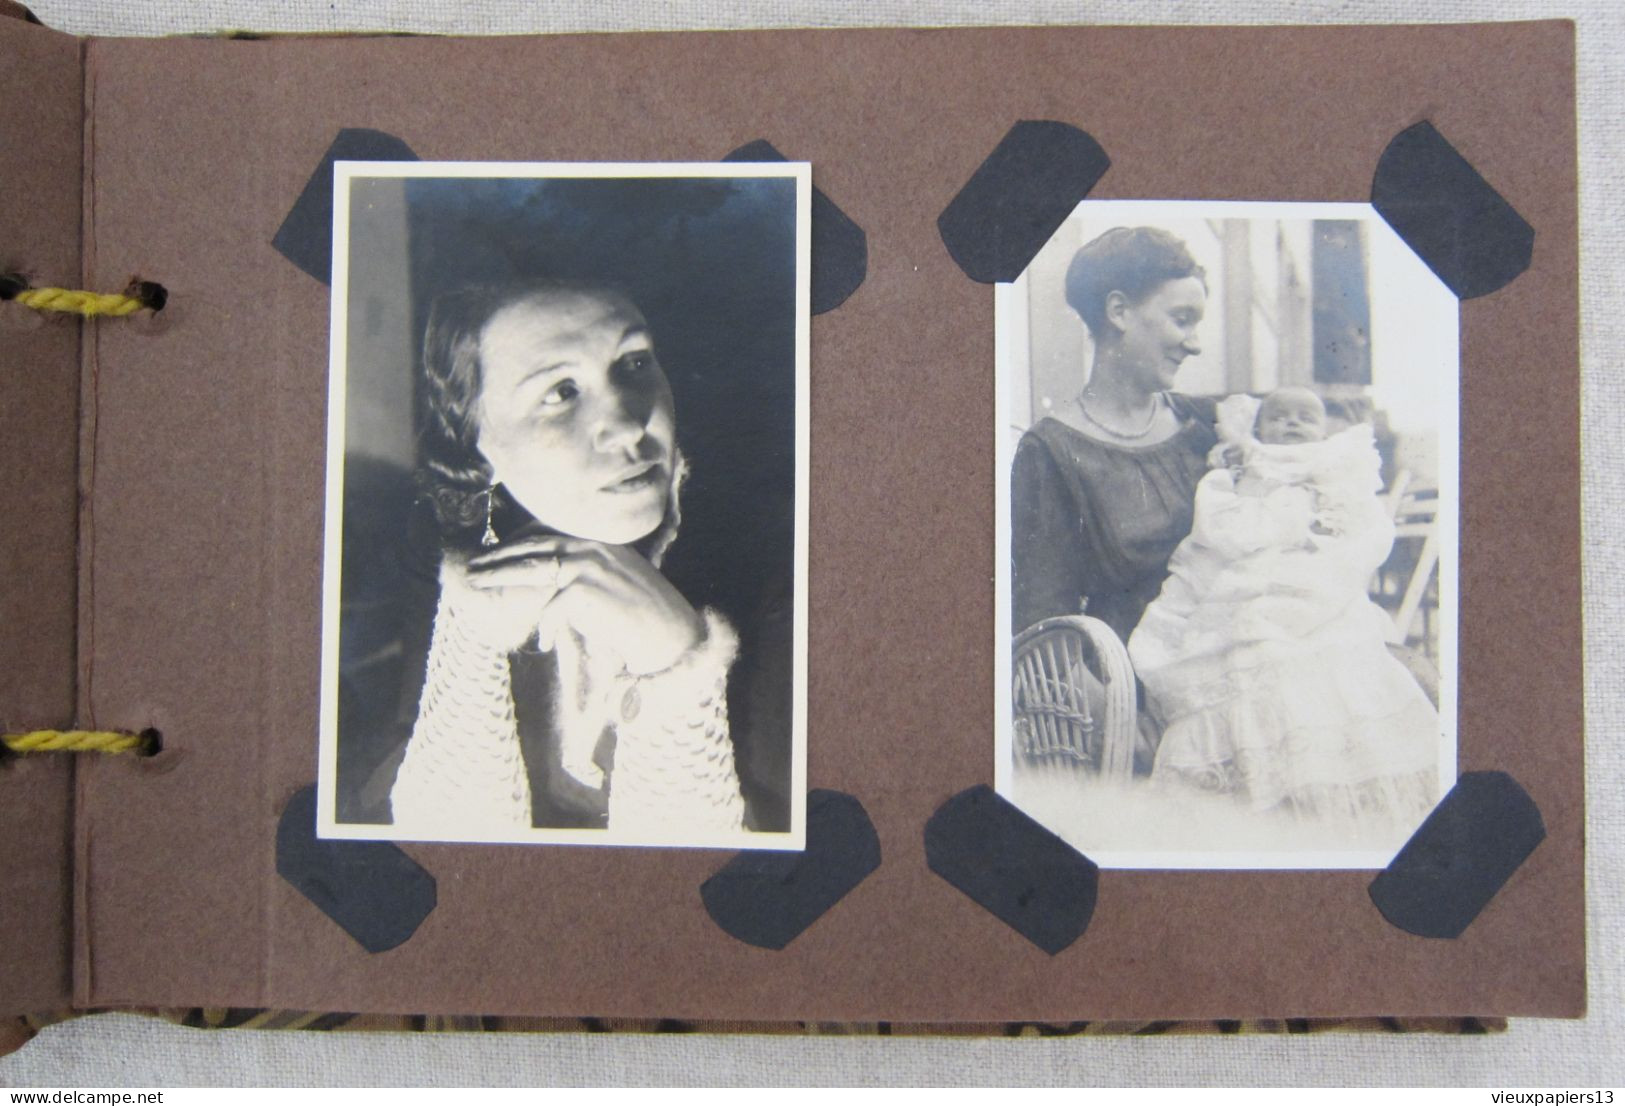 Petit album famille allemand 33 photos c.1920 jeune femme lapin poupée chiens militaire infirmières